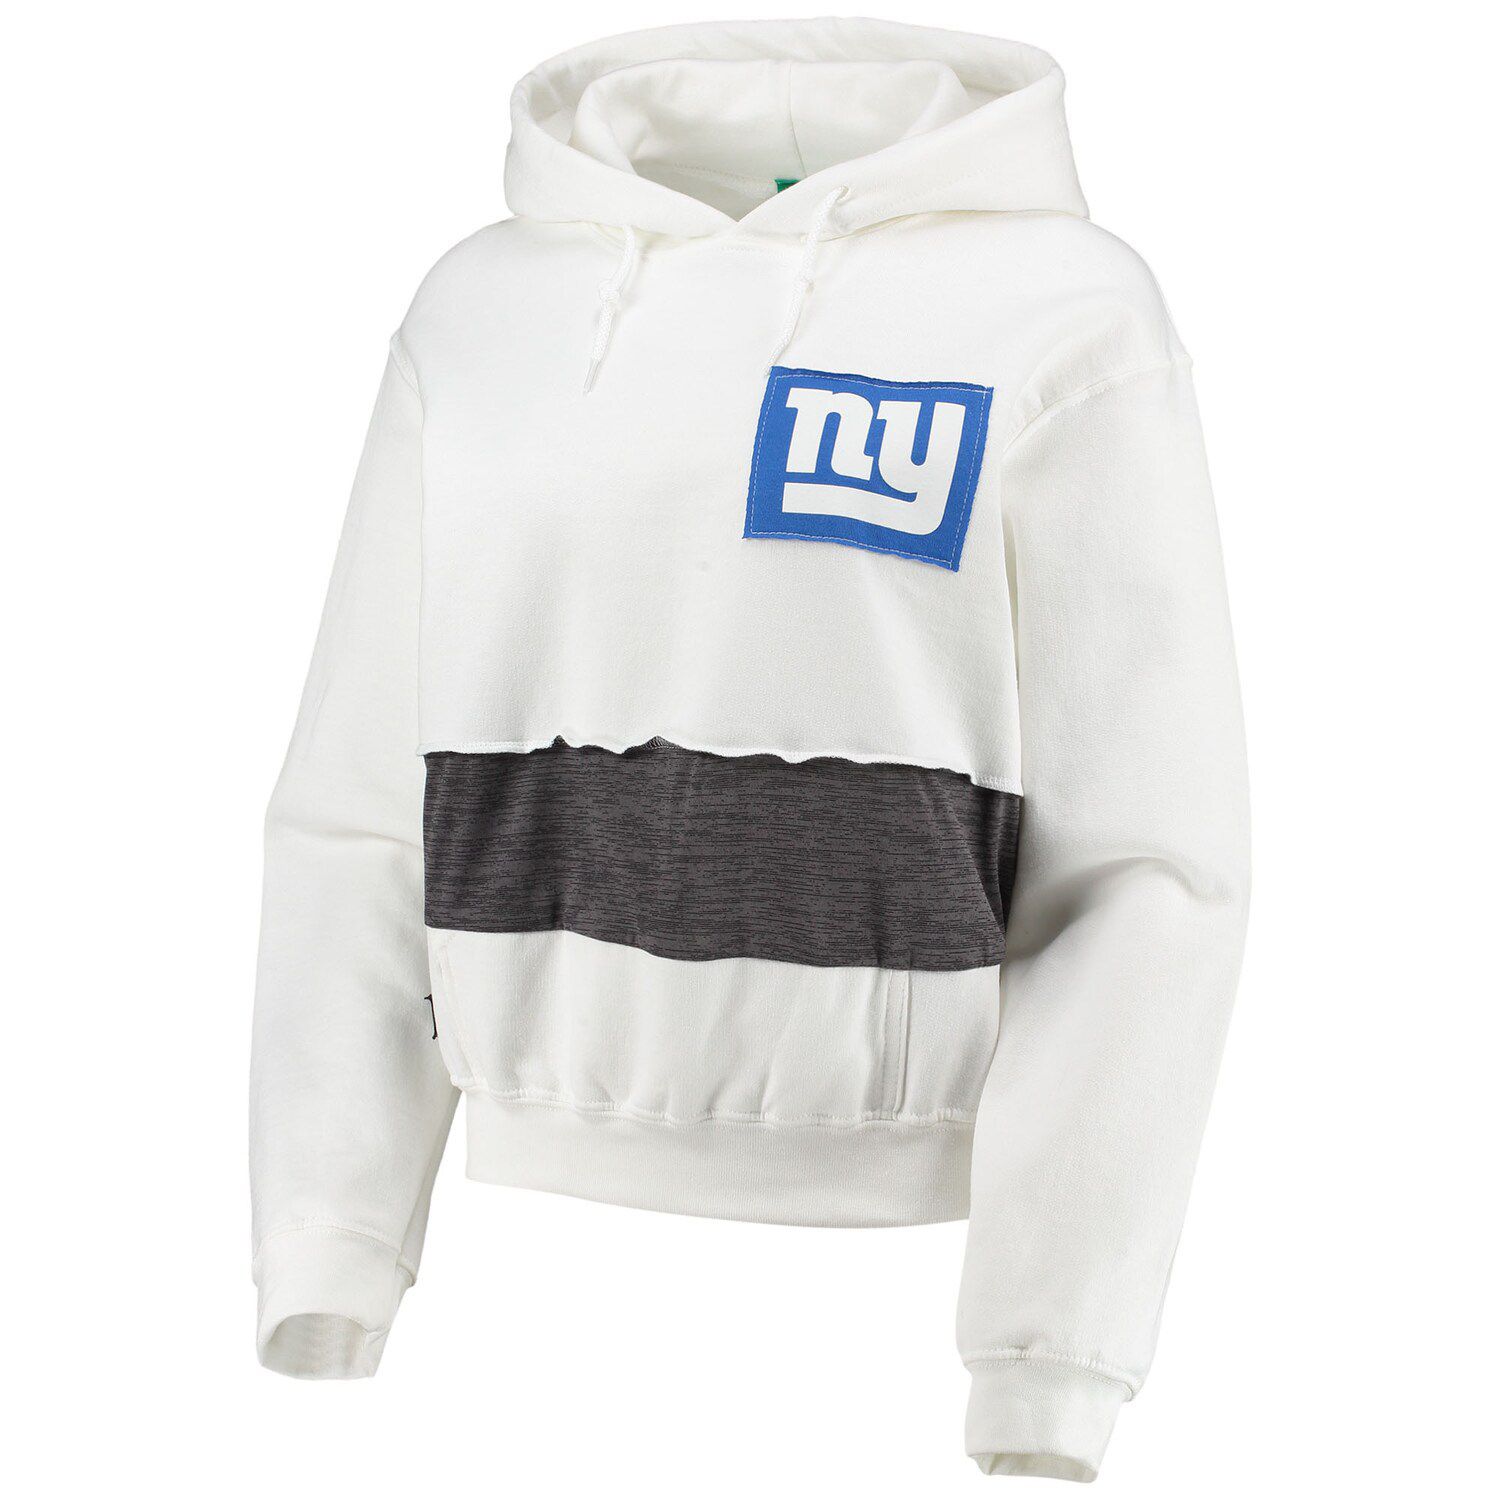 цена Женский укороченный пуловер с капюшоном белого цвета с капюшоном Refried Apparel New York Giants